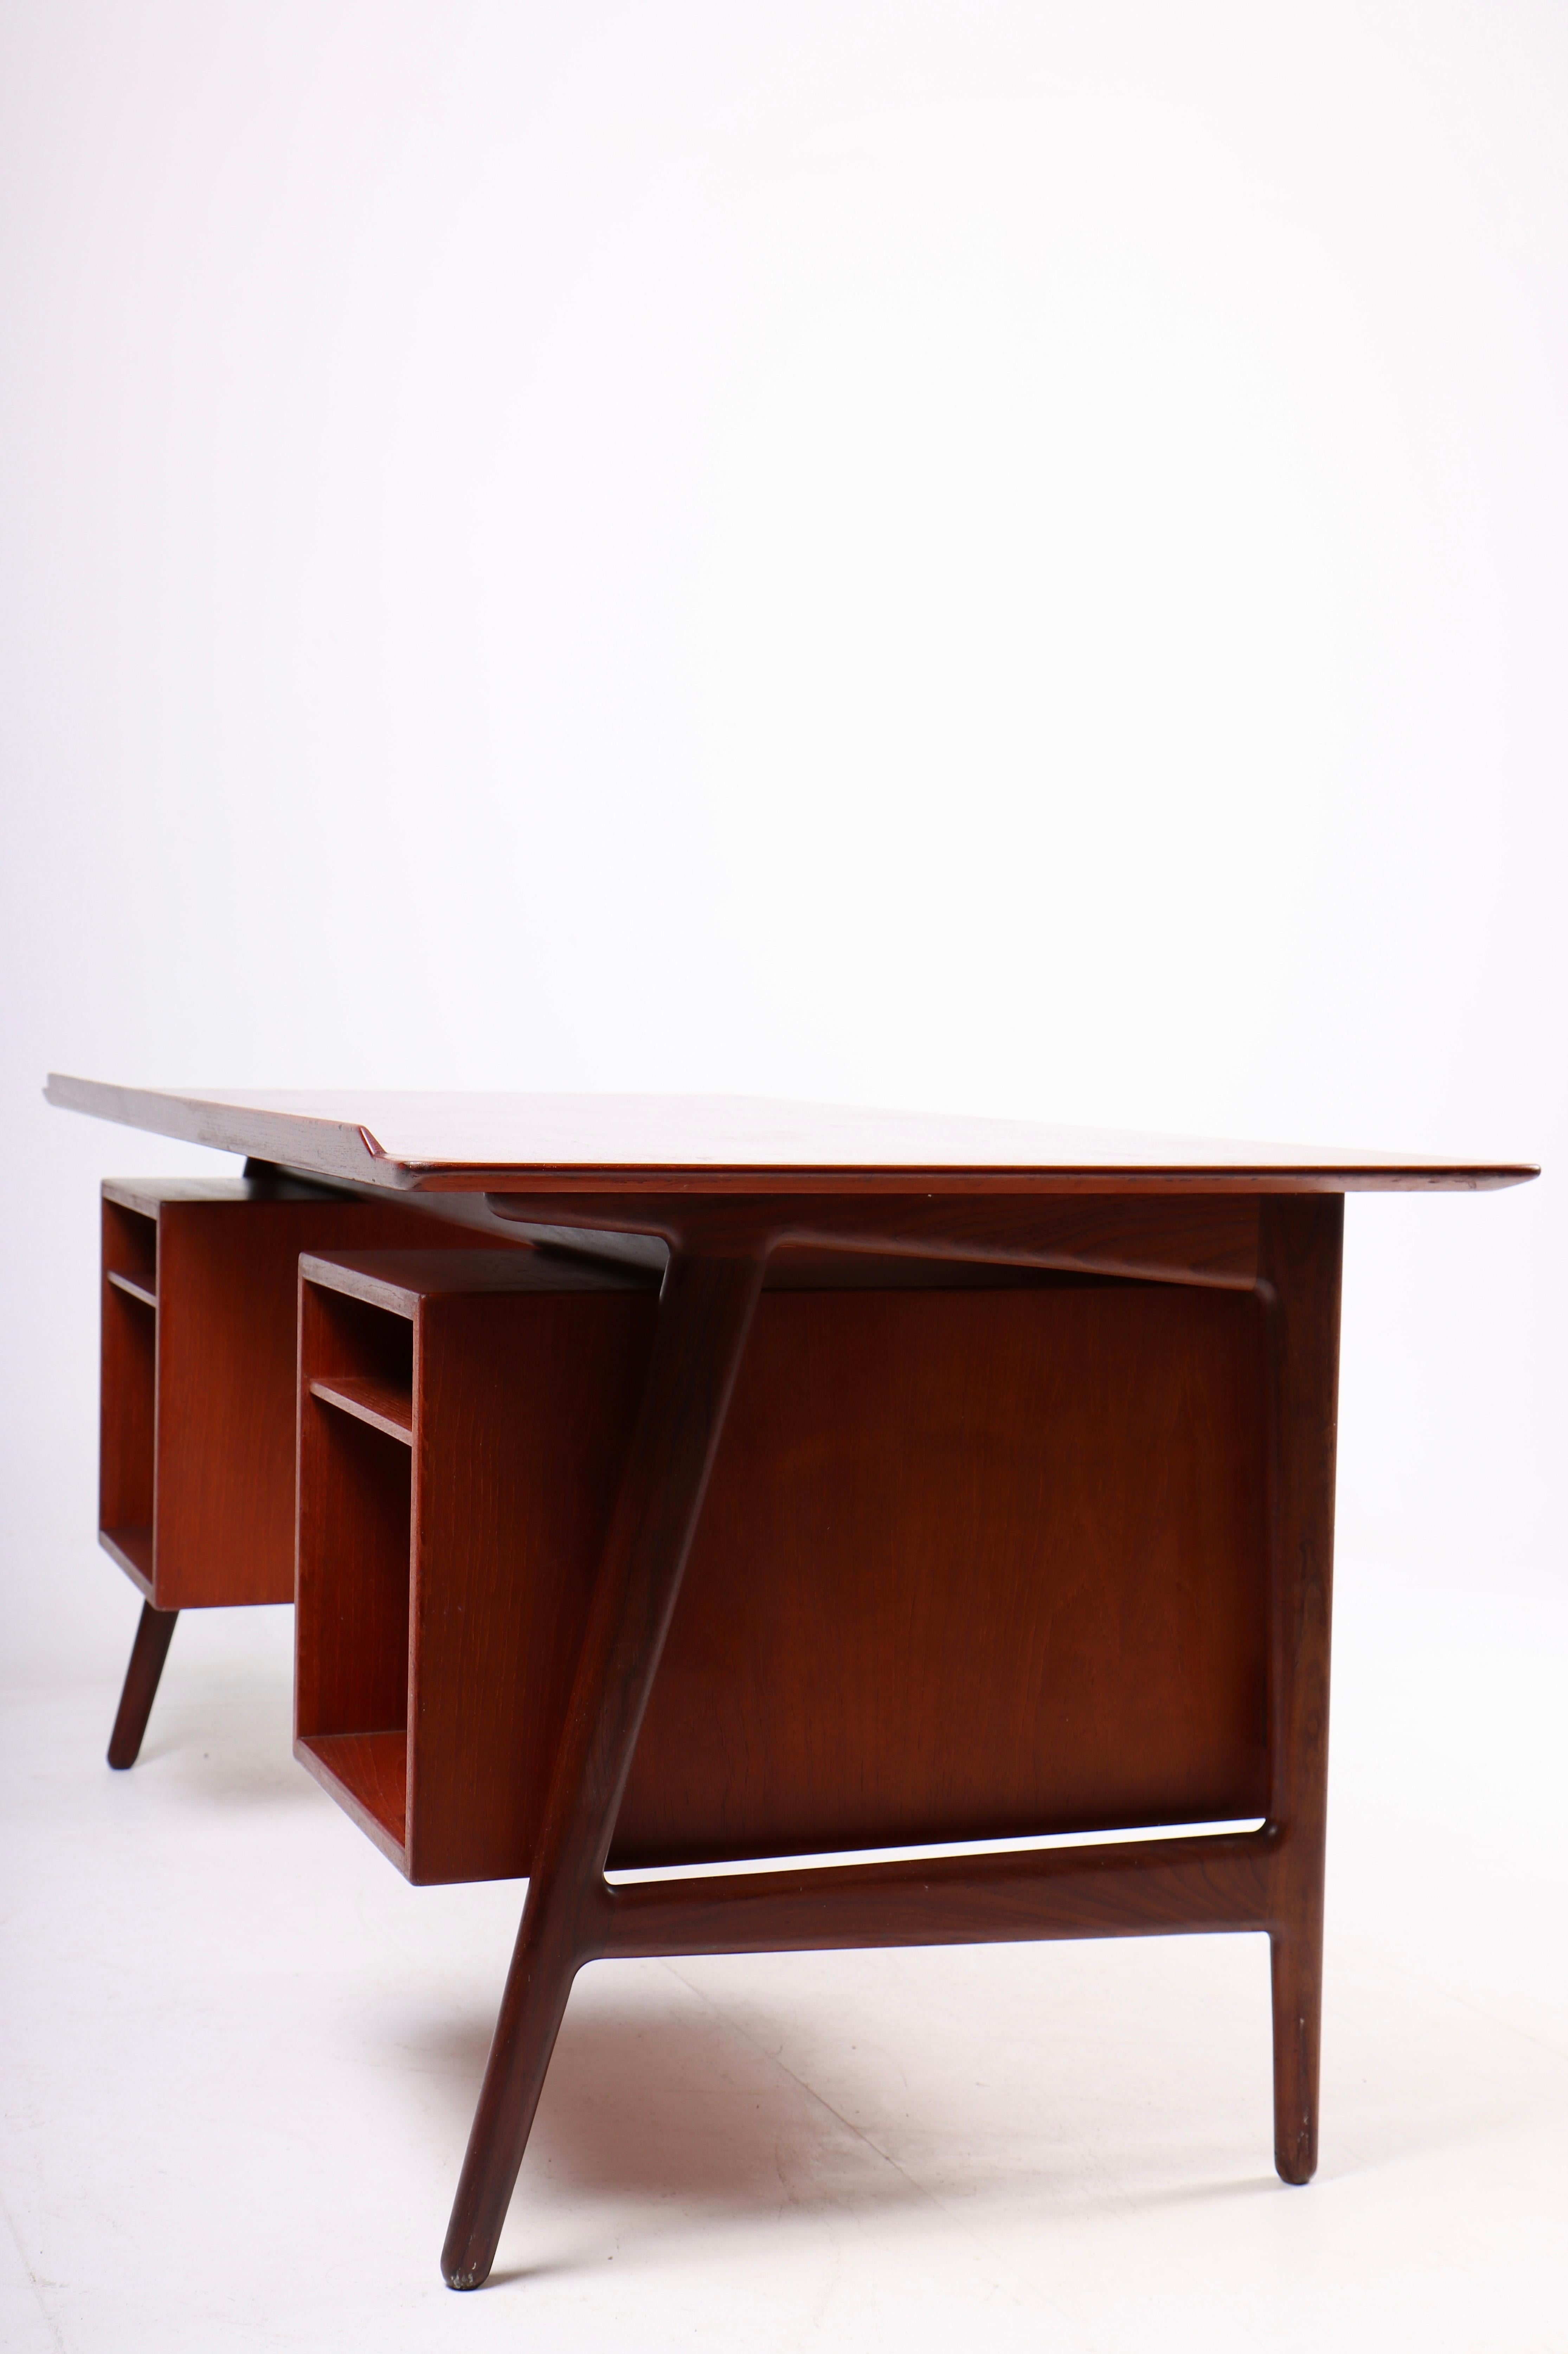 Mid-20th Century Danish Midcentury Desk in Teak by Arne Vodder & Anton Borg, 1960s